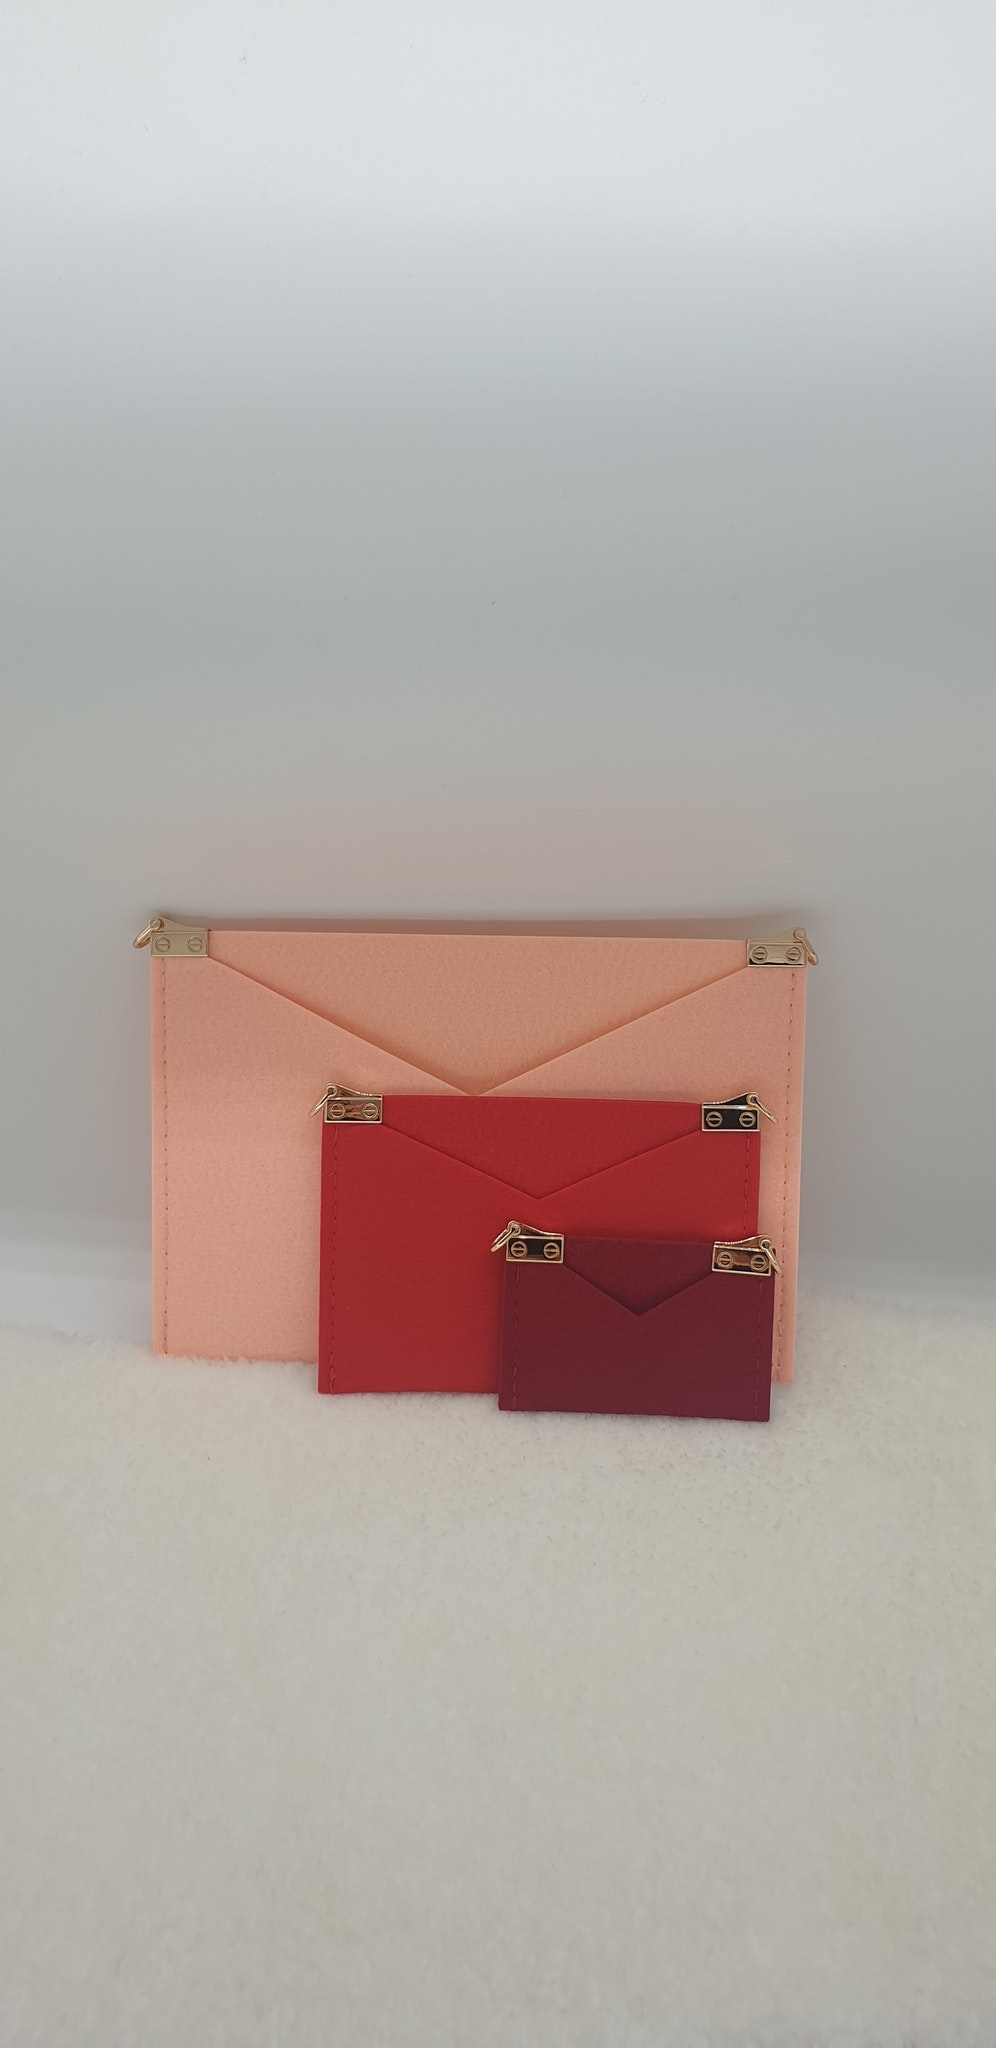 Kirigami Pochette Envelope Bag Organizer Insert Set L V 